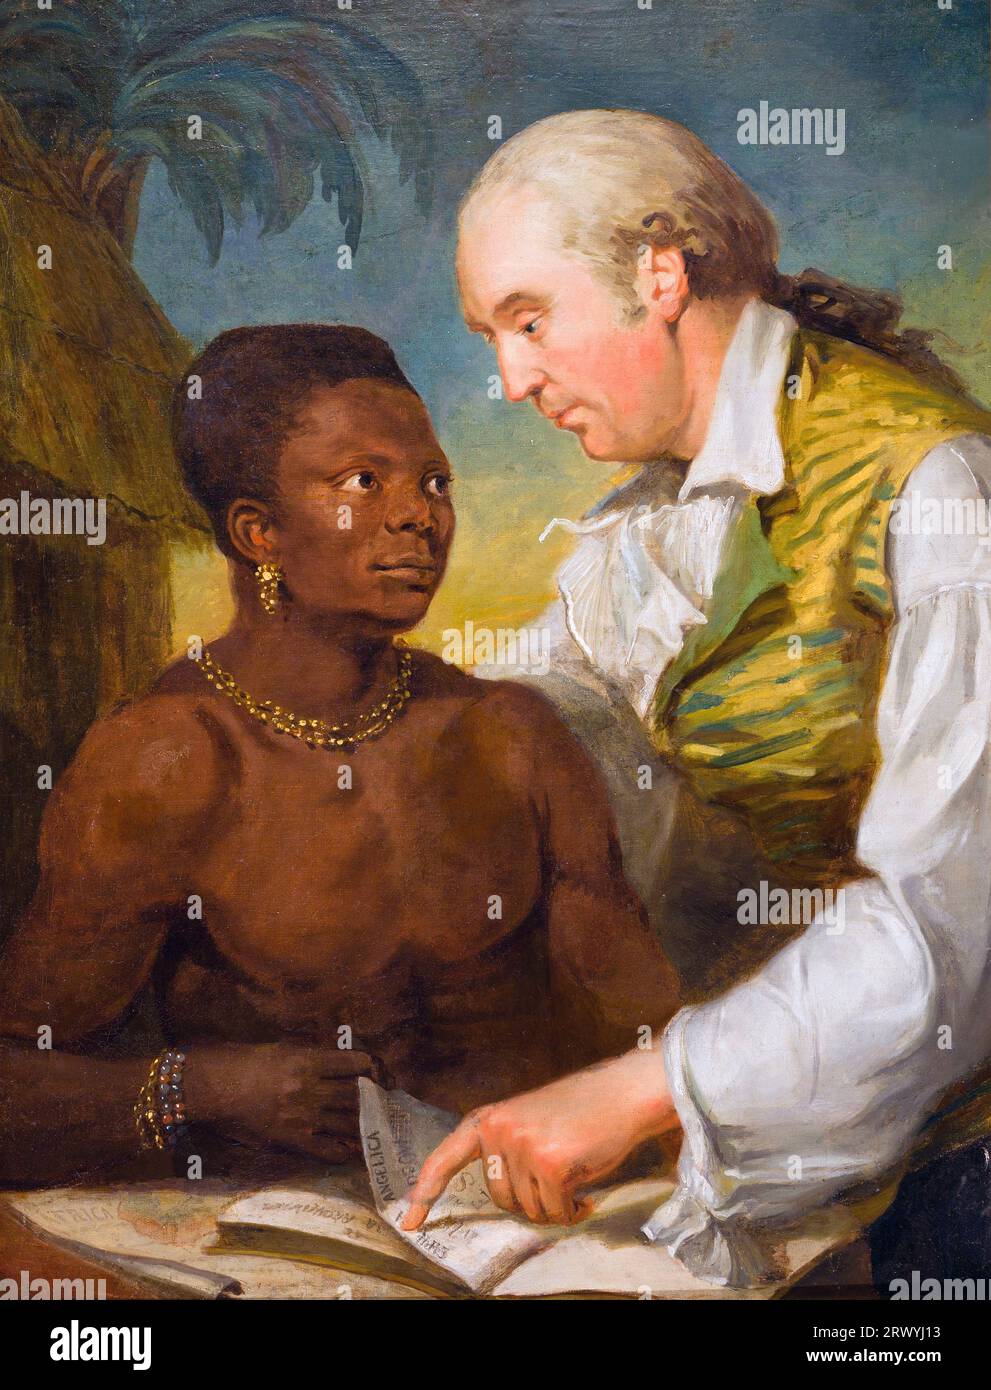 Il ritratto rappresenta l'industriale svedese Carl Bernhard Wadström (1746-1799) e il principe africano Peter Panah. Wadström fu un attivo oppositore della tratta degli schiavi e riscattò Panah da una nave schiavista nel 1789. Dipinto da Carl Fredrik von Breda Foto Stock